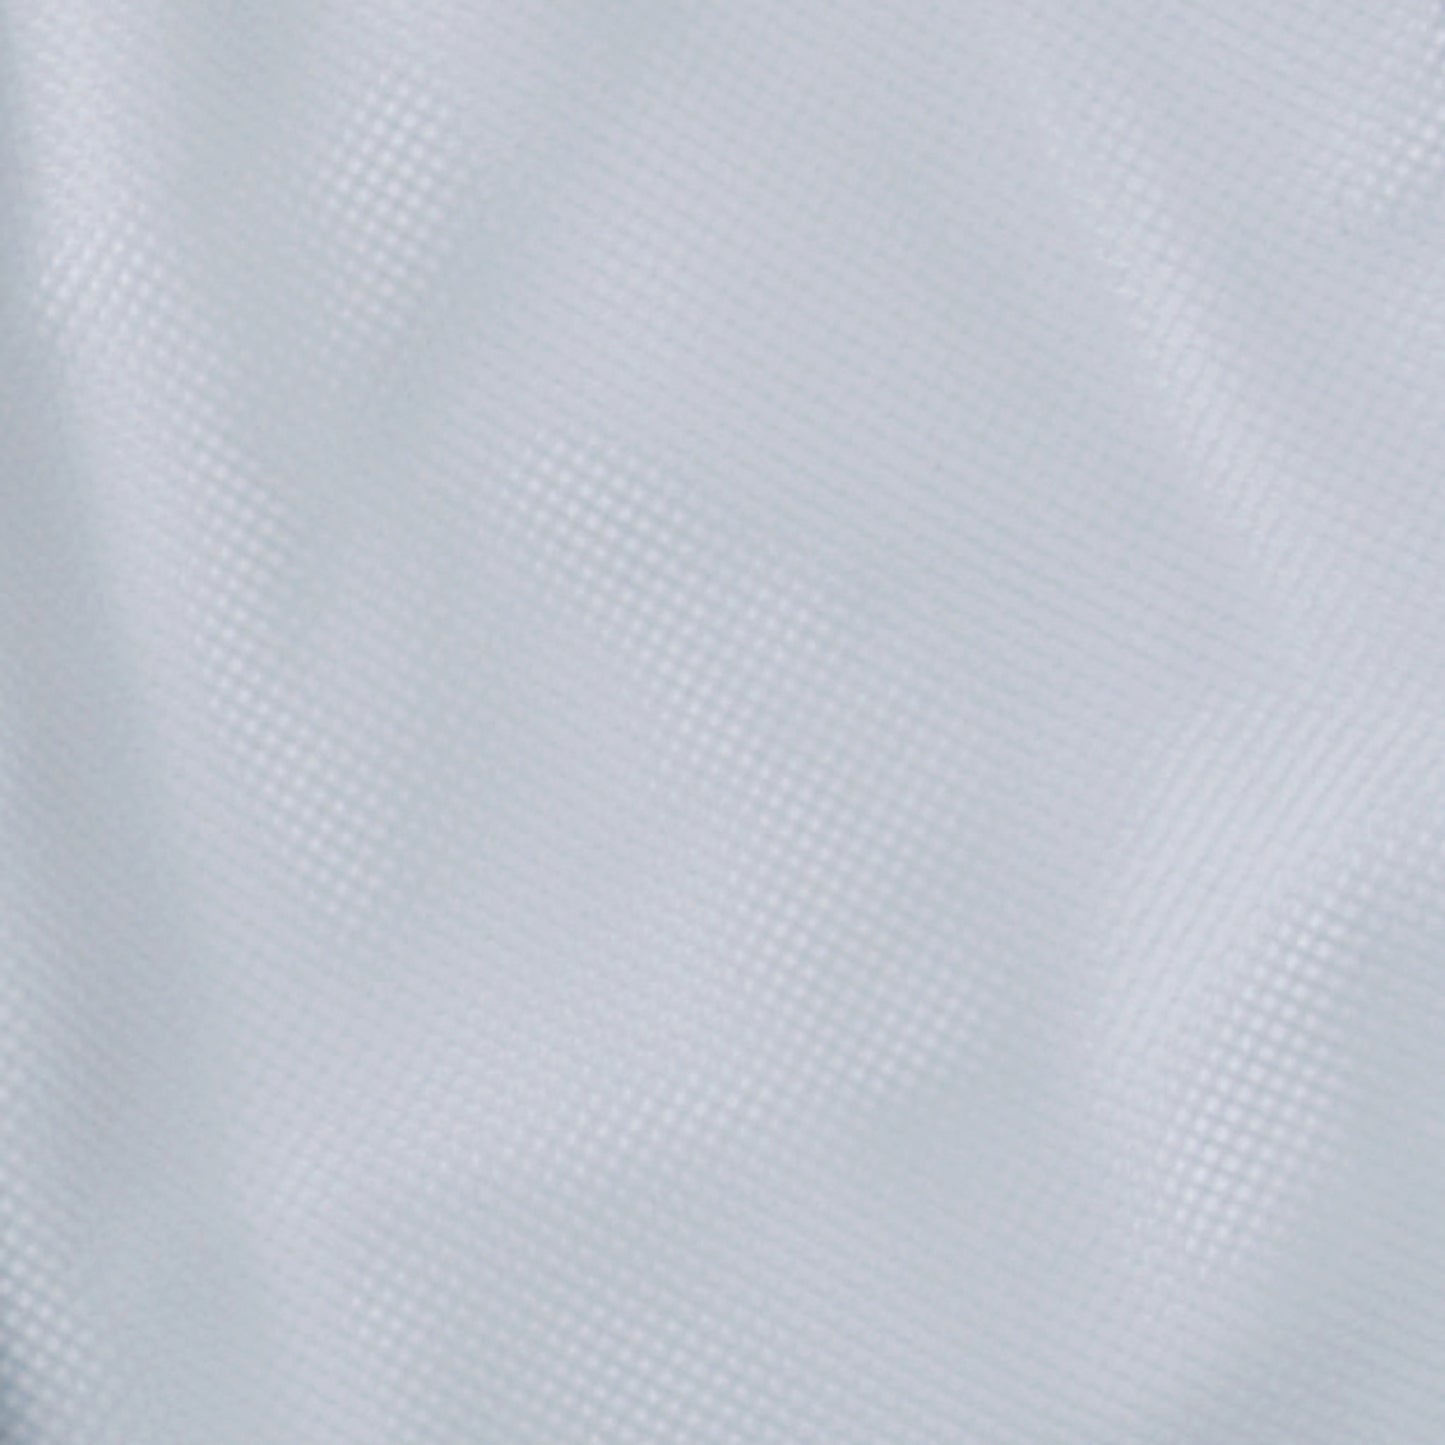 サンエス 食品工場用白衣 フードマイスター 制菌繊維・制電繊維 【男性用パンツ】 FX70336